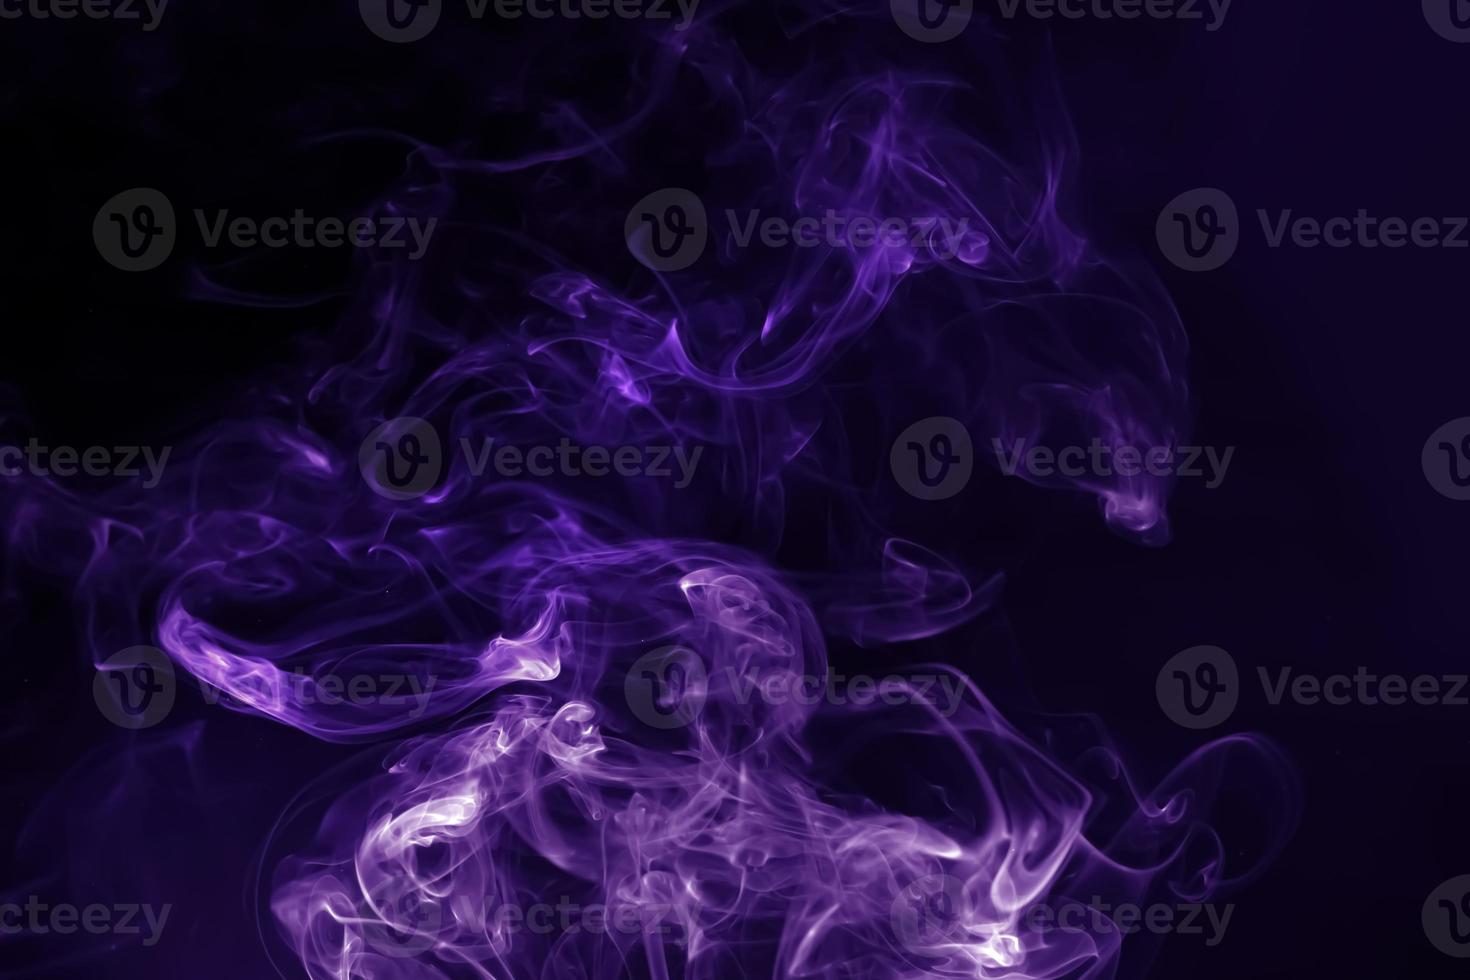 lila rök abstrakt bakgrund foto